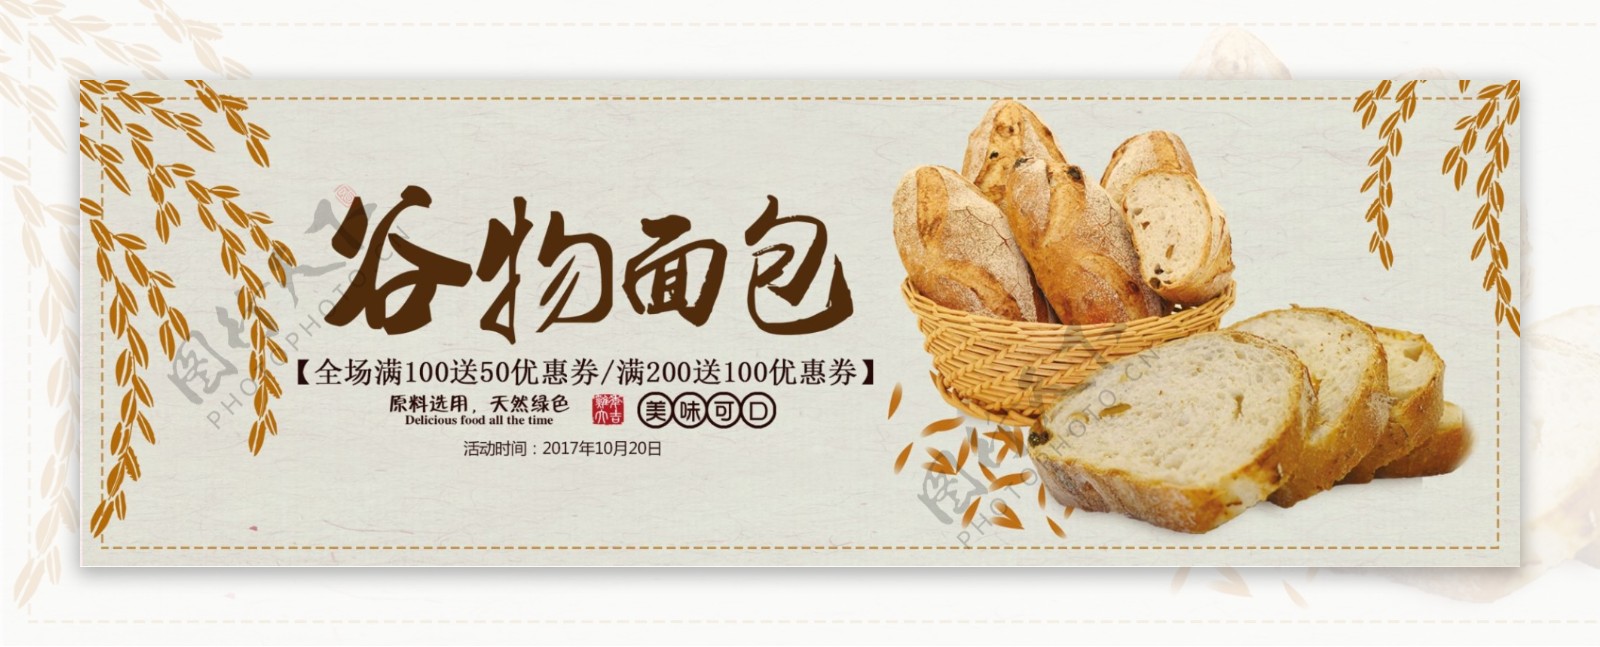 文艺清新谷物小麦面包食品淘宝banner